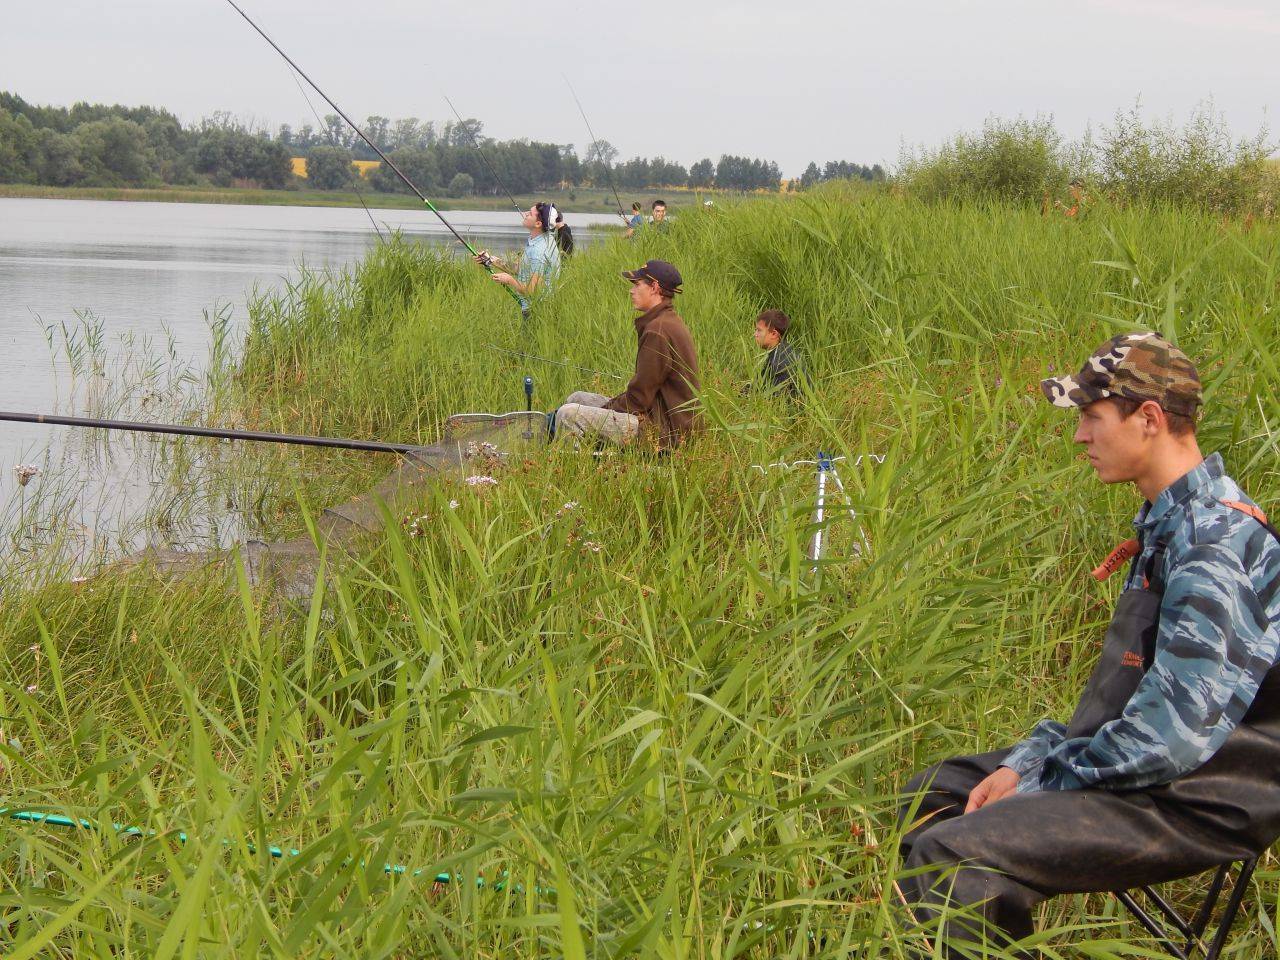 Рыбалка в башкирии, башкортостан. рыбные места, реки, озера, водохранилища, базы, видео